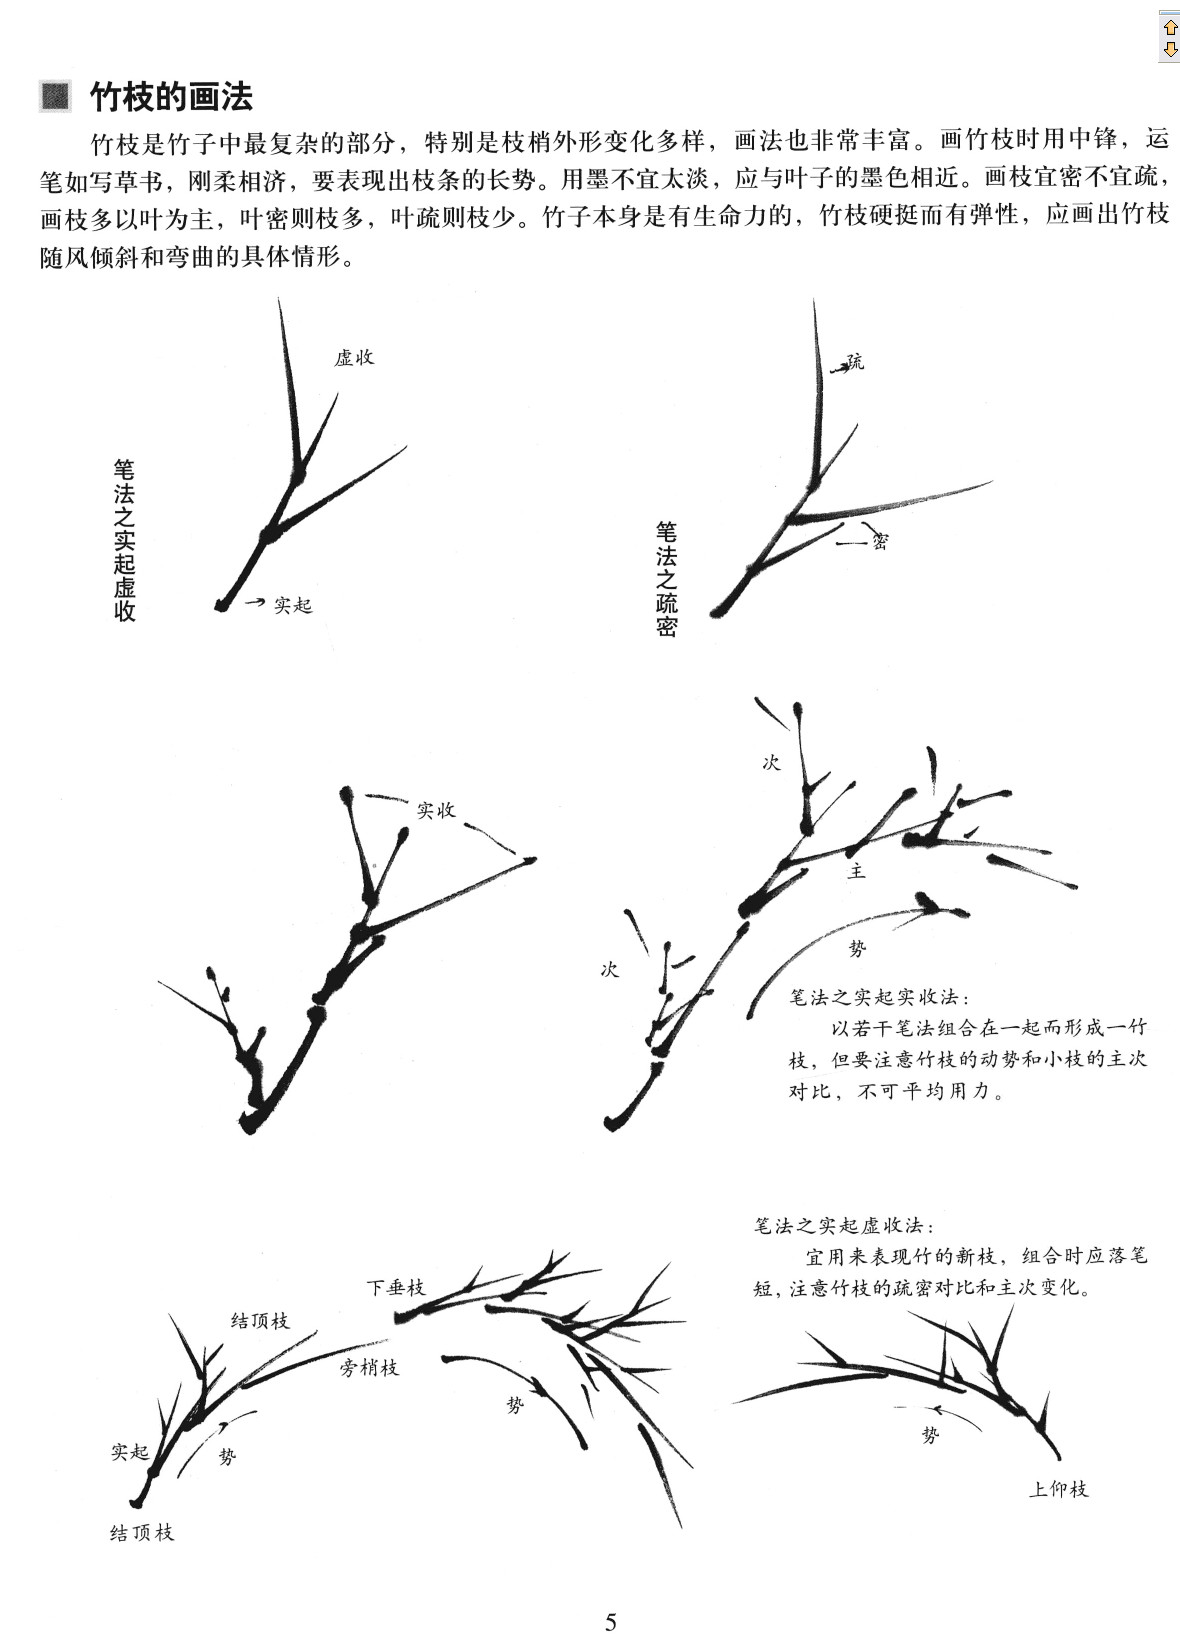 中国画技法基础教学-竹子的画法